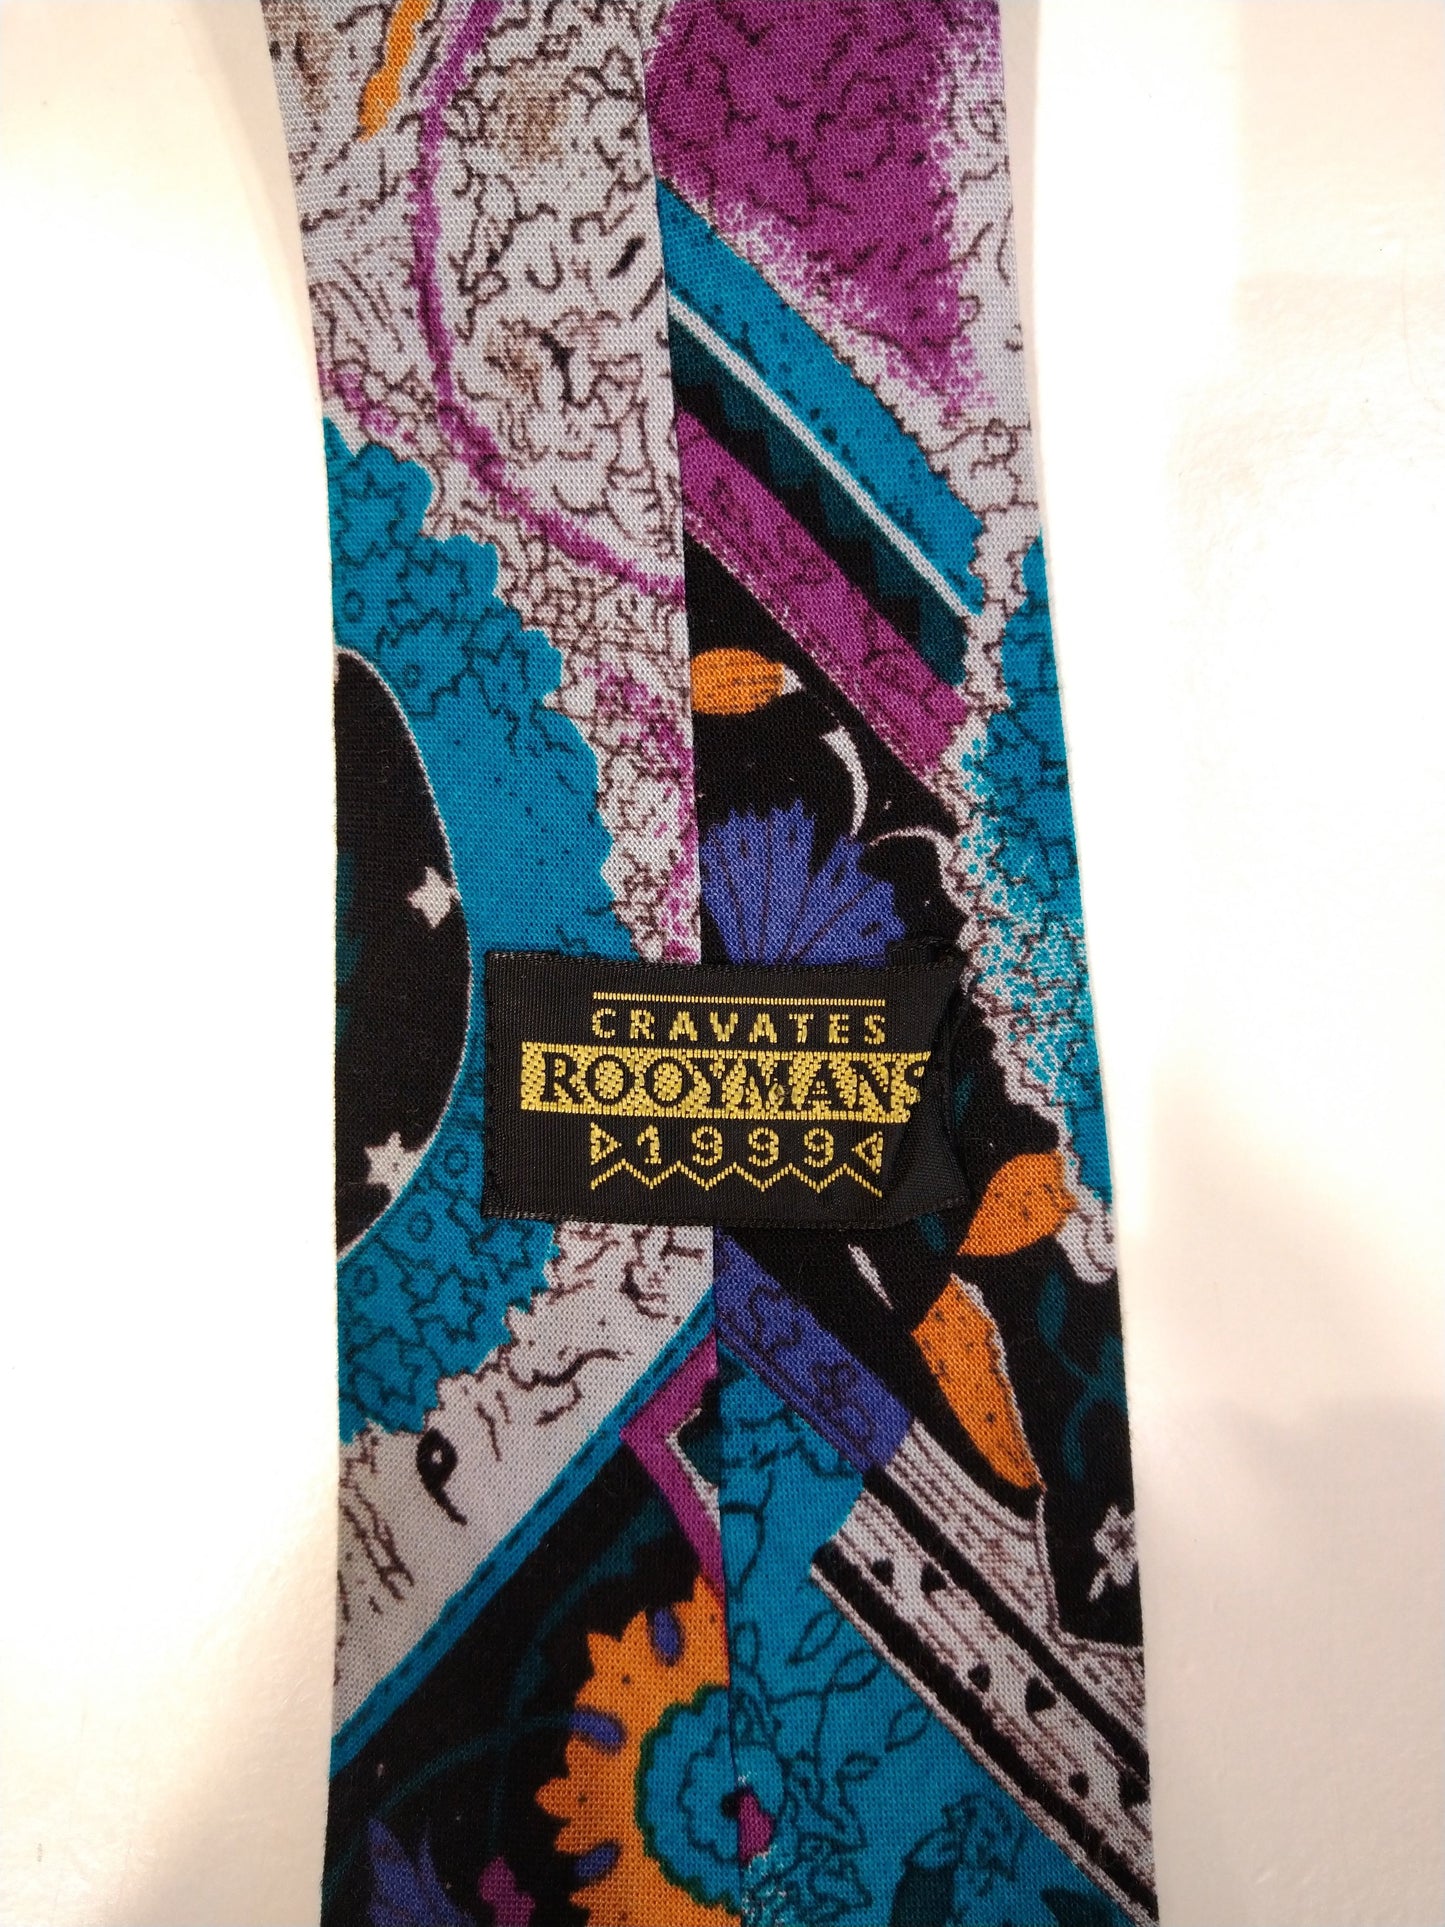 Aime la cravate super colorée de Rooymans.